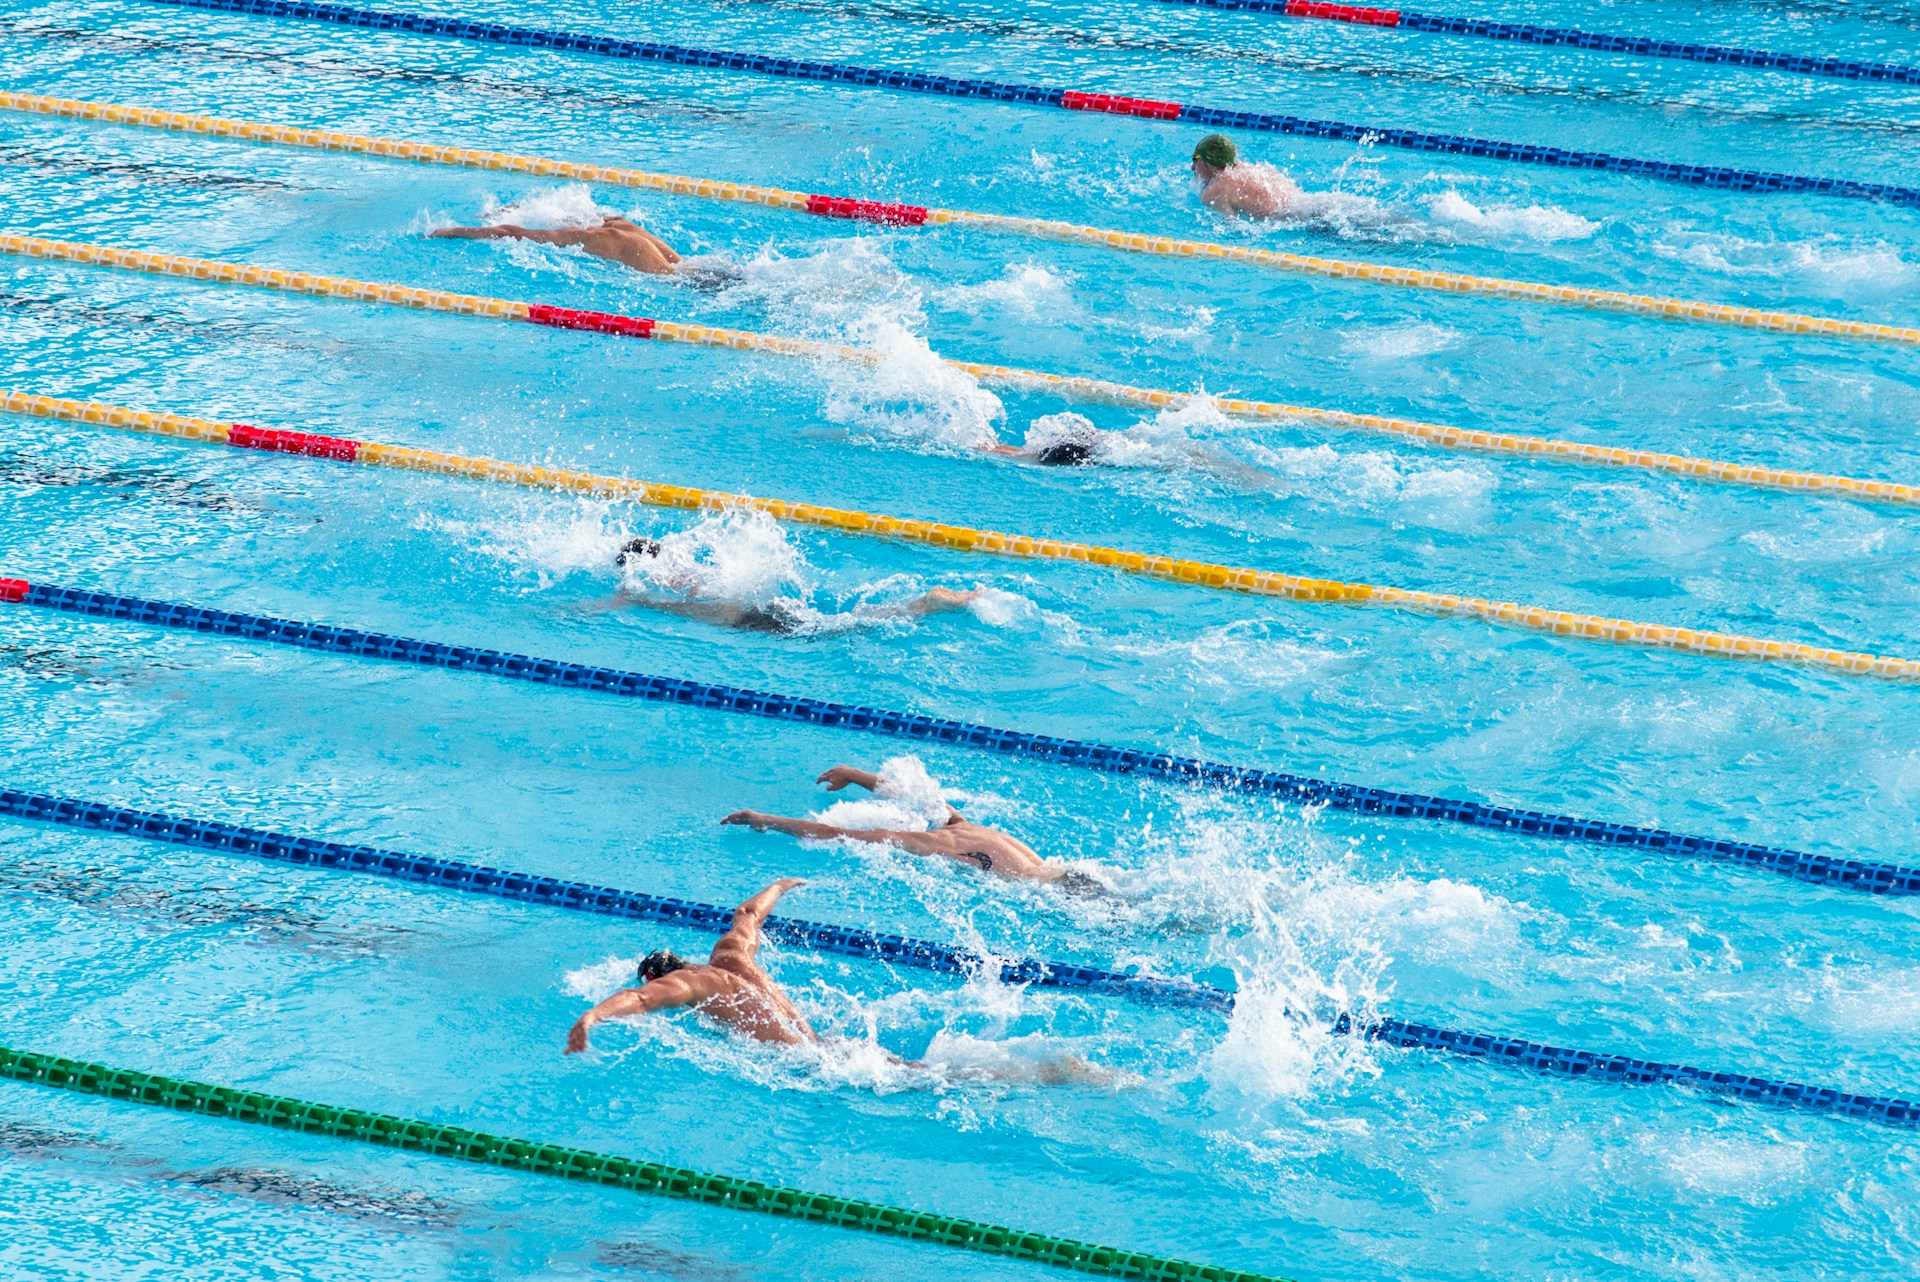 Des compétiteurs en natation lors d'une compétition.